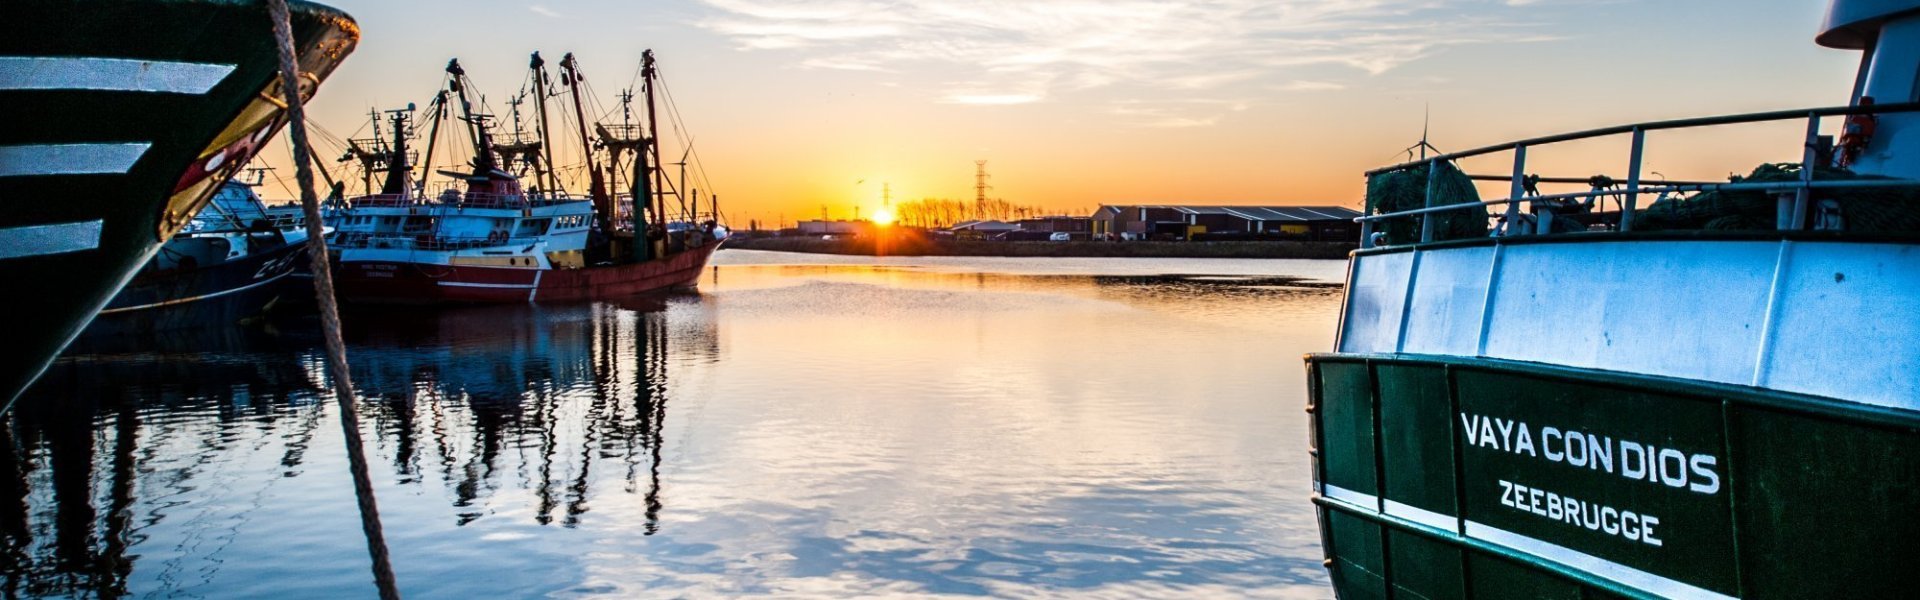 Haven in Zeebrugge met zonsopgang. Verschillende visserboten in de haven tijdens het blauwe uur en stralende zon.